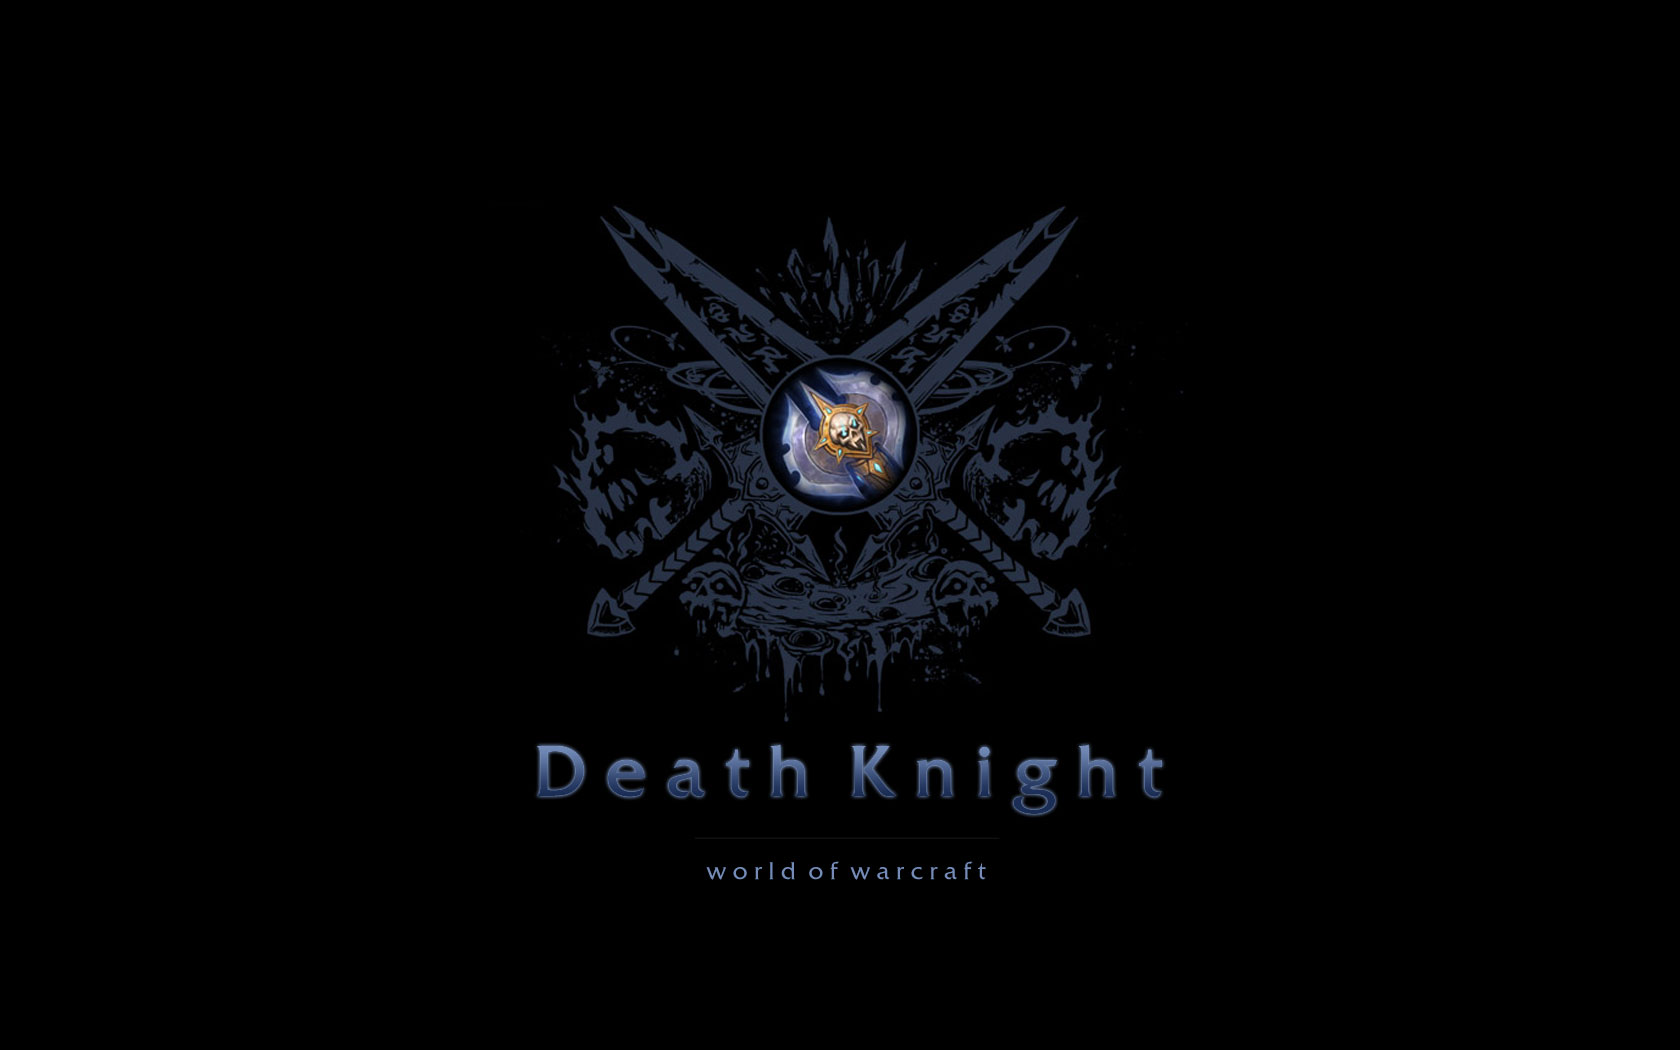 Be A Death Knight Wallpaper HD